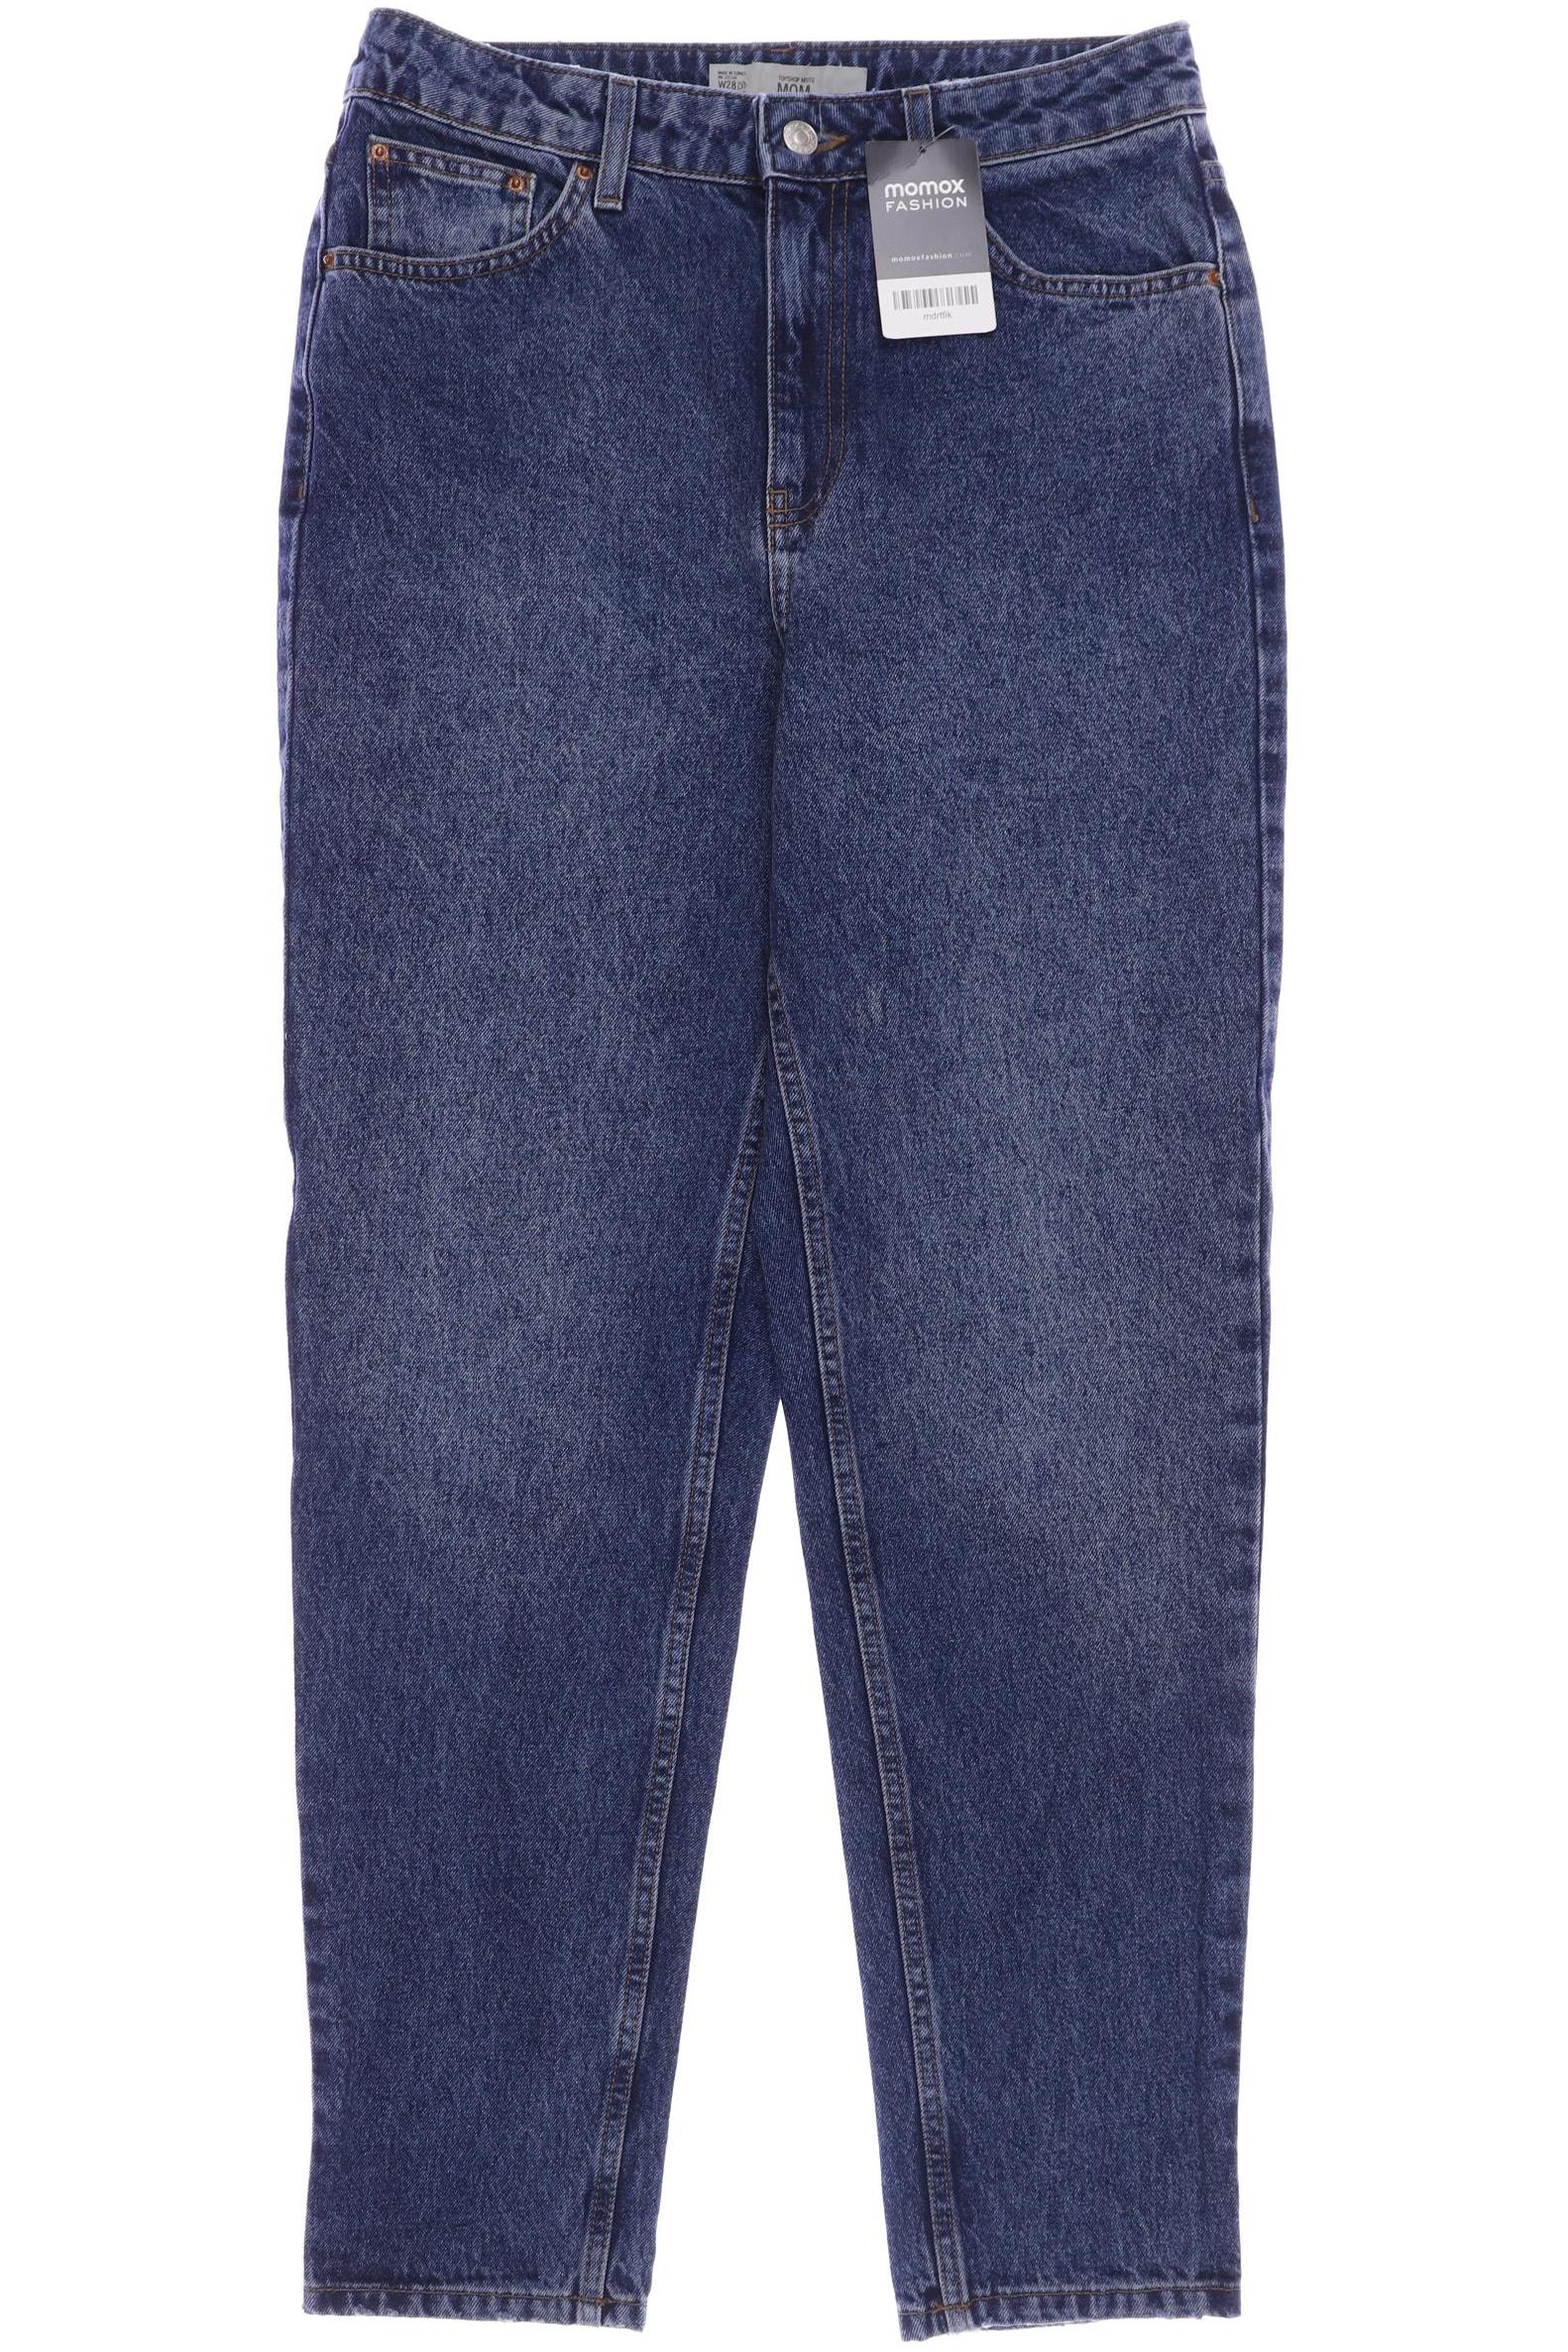 Topshop Damen Jeans, blau, Gr. 38 von Topshop